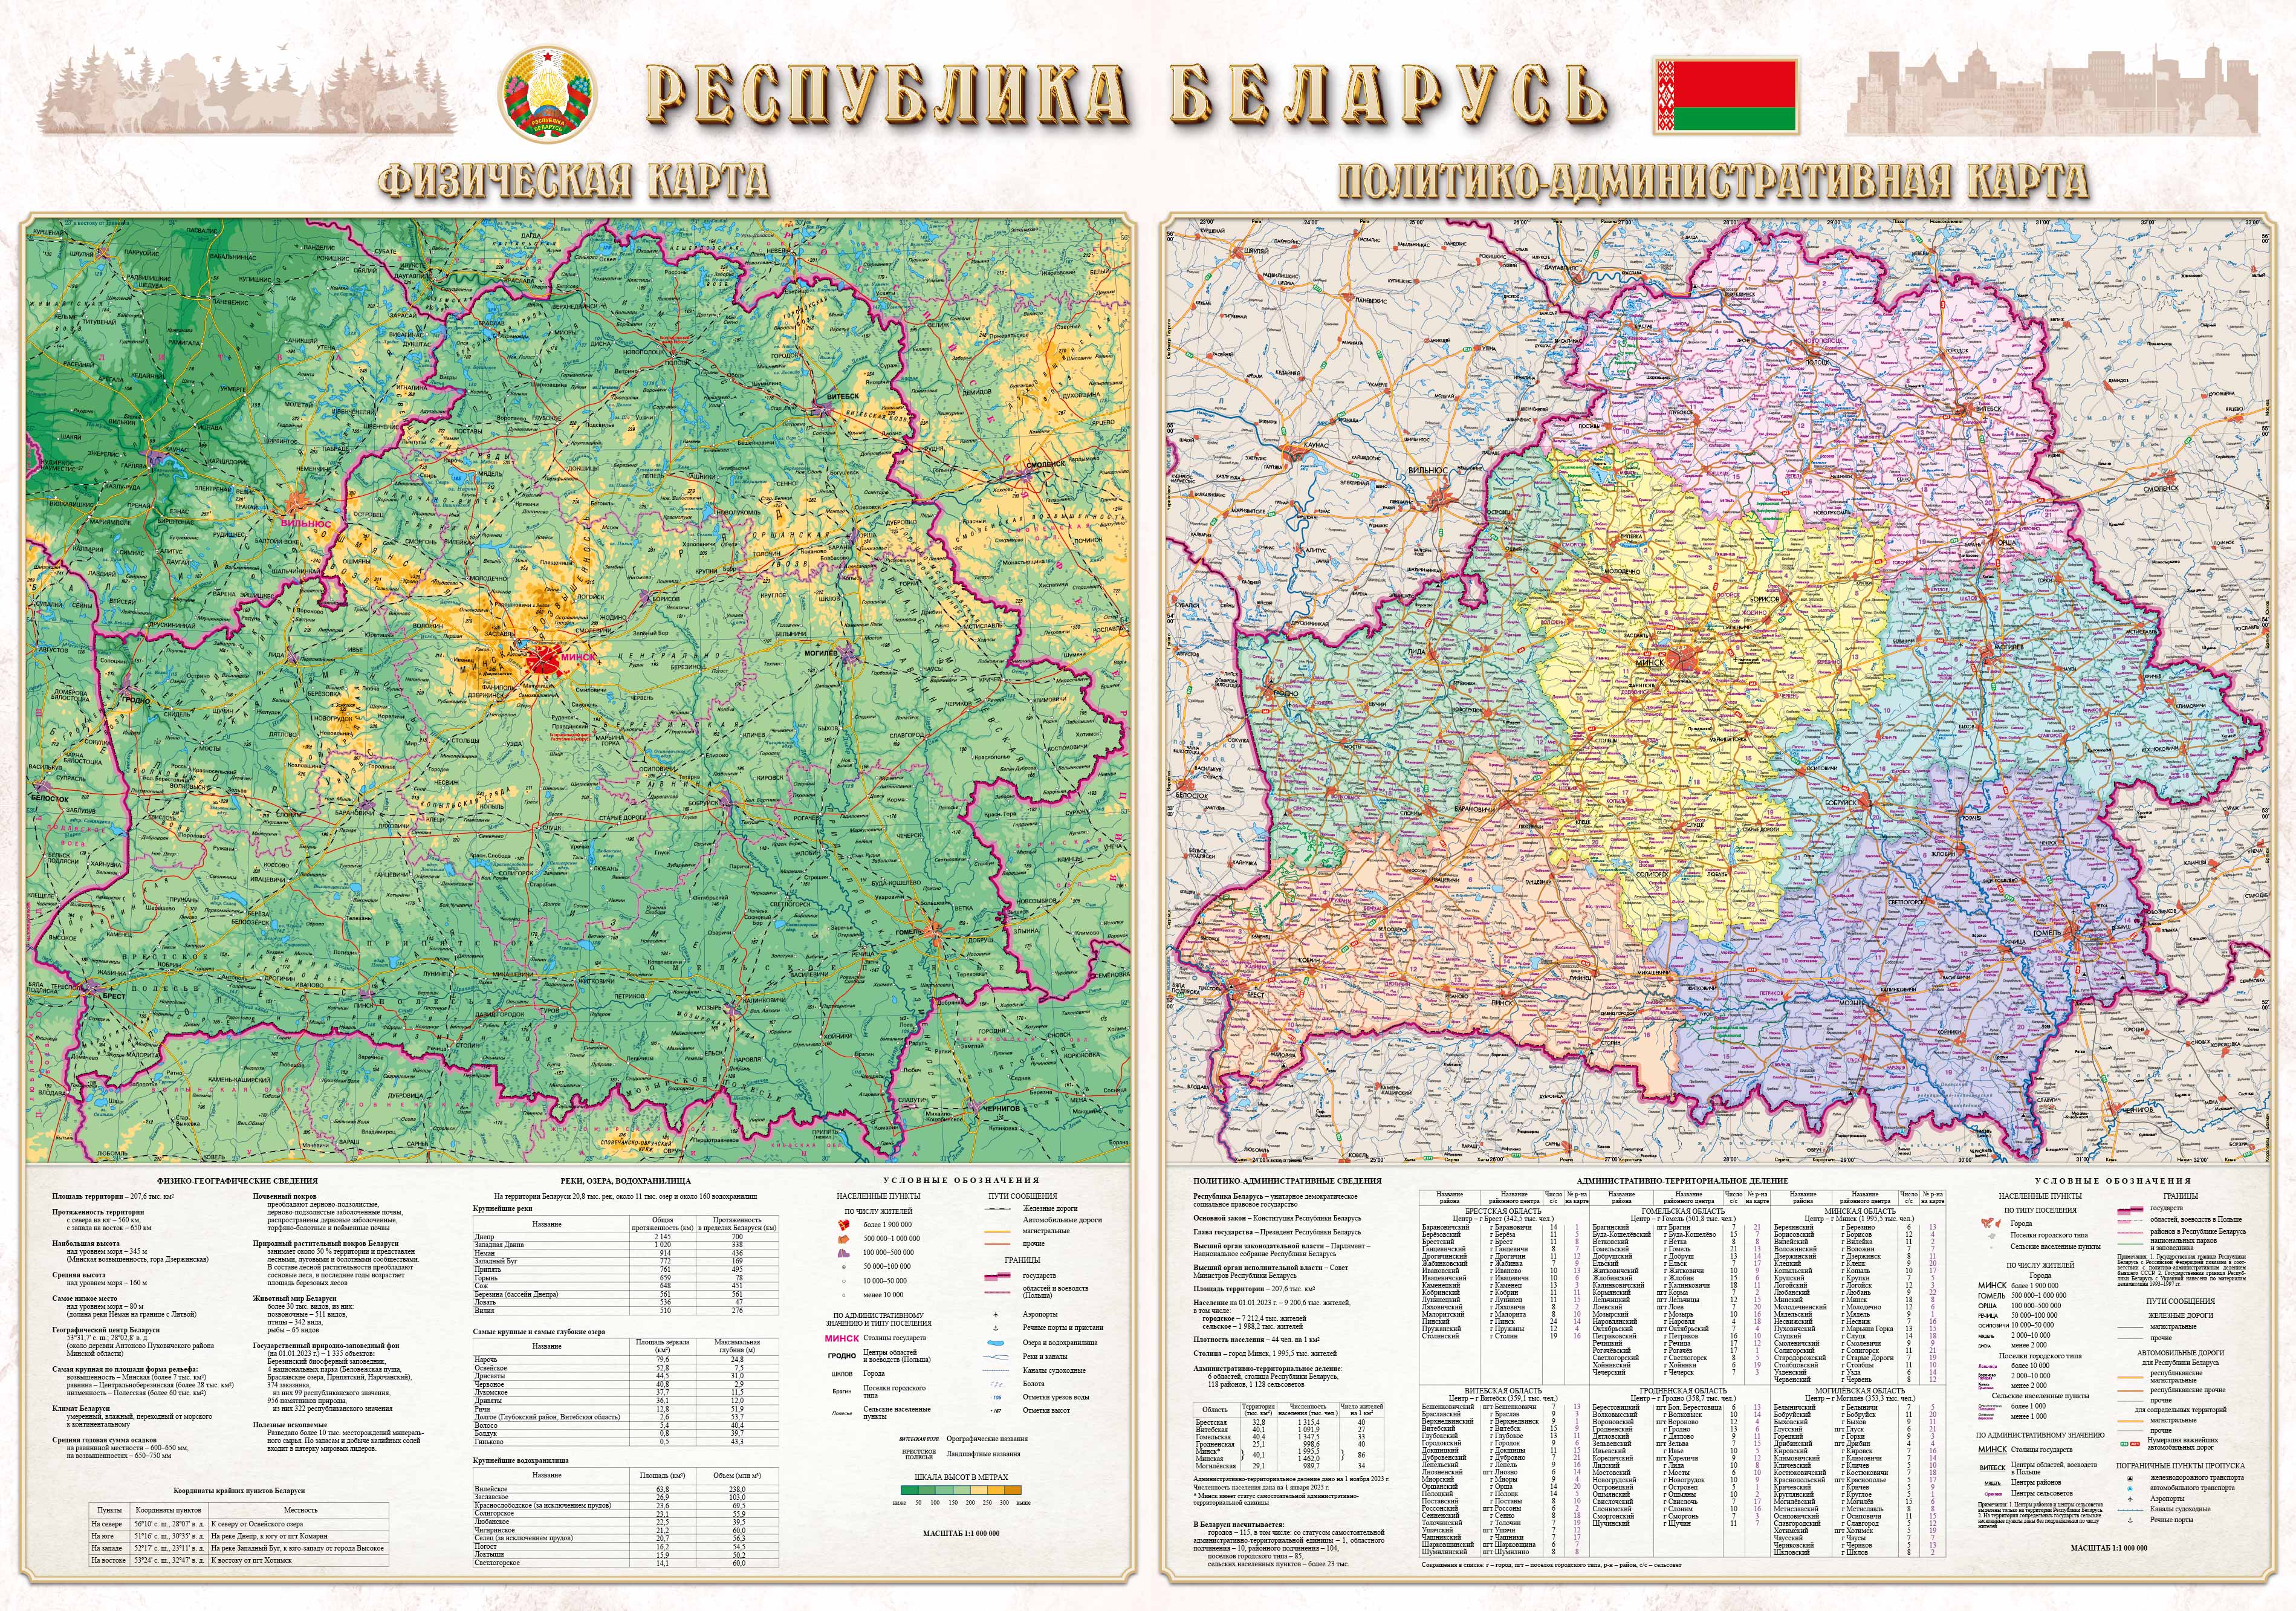 Республика Беларусь. Физическая карта. Политико-административная карта